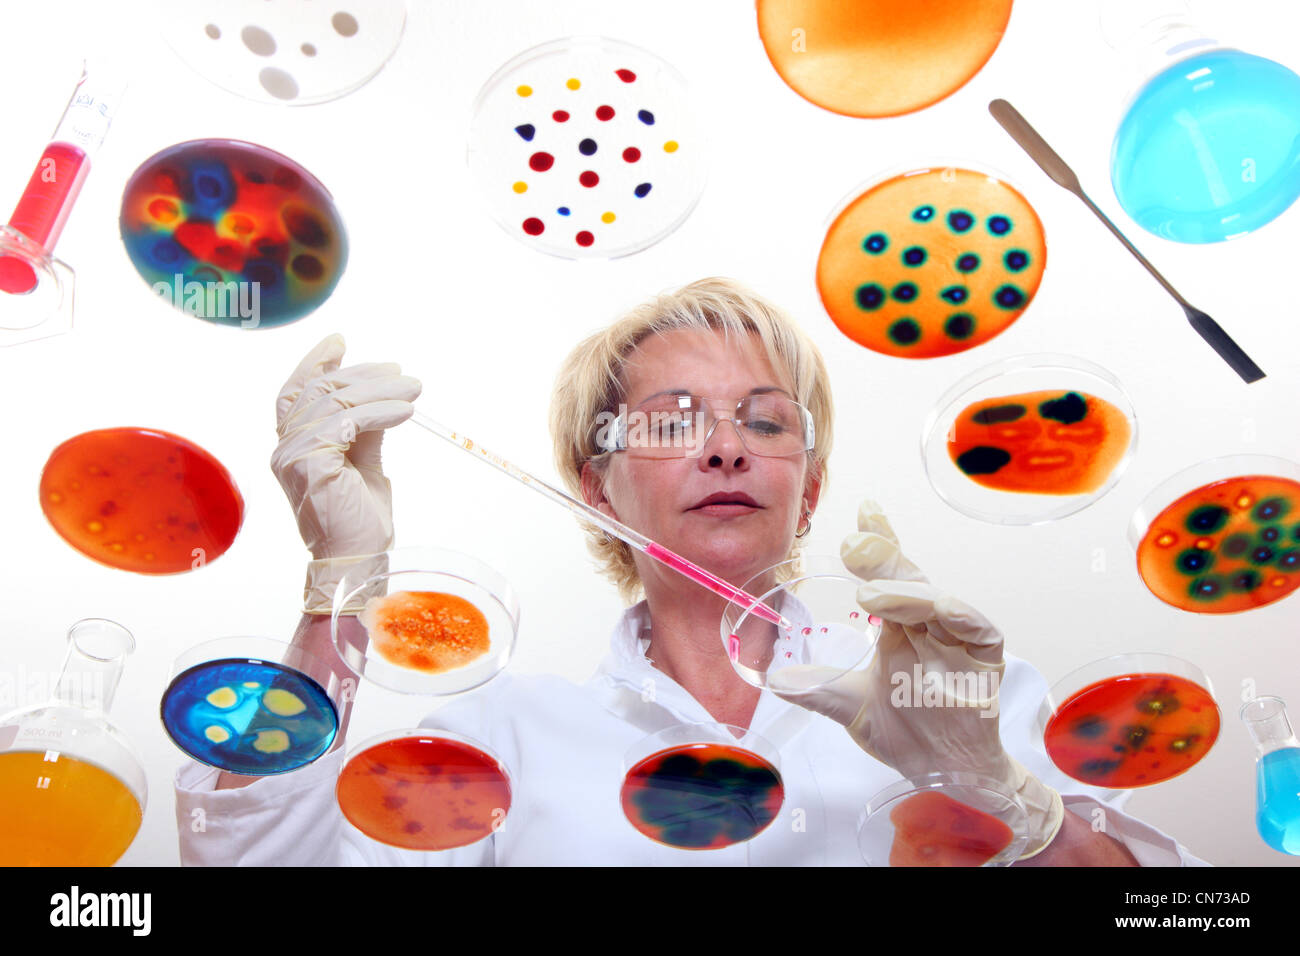 Technicien de laboratoire dans le laboratoire avec des cultures de bactéries dans des boîtes de Pétri. Vu à travers une table en verre. Banque D'Images